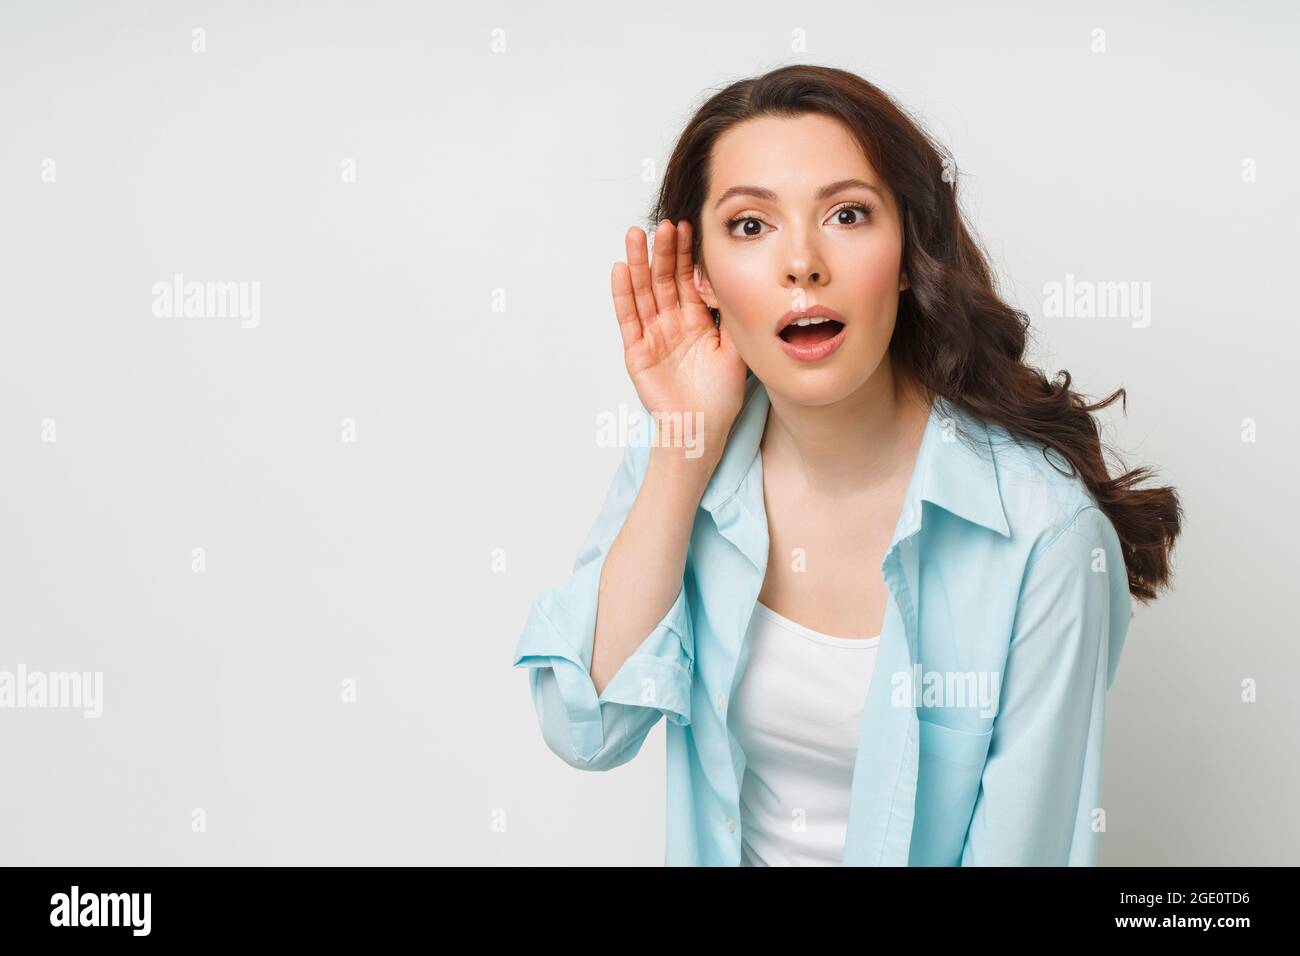 Una giovane donna si lancia sulla conversazione di qualcun altro con la mano all'orecchio. Il concetto di intercettazioni, spionaggio, pettegolezzi e la stampa gialla Foto Stock